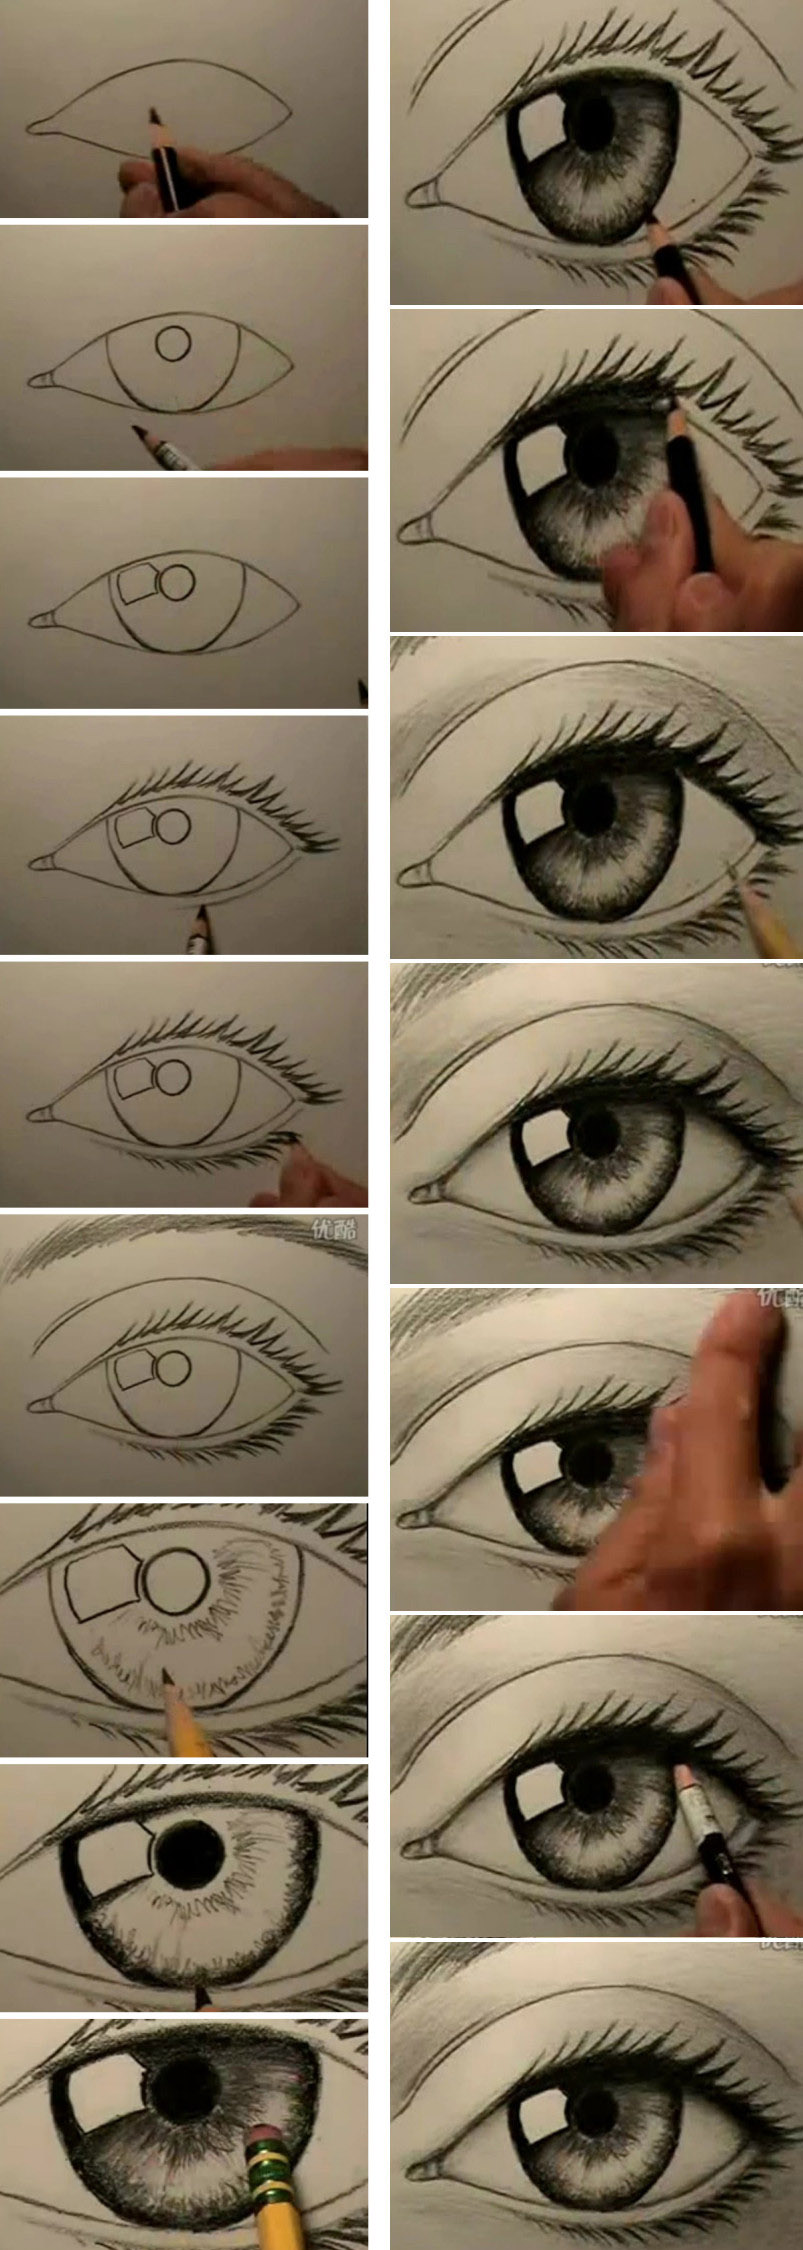 震撼的眼睛手绘画法教程